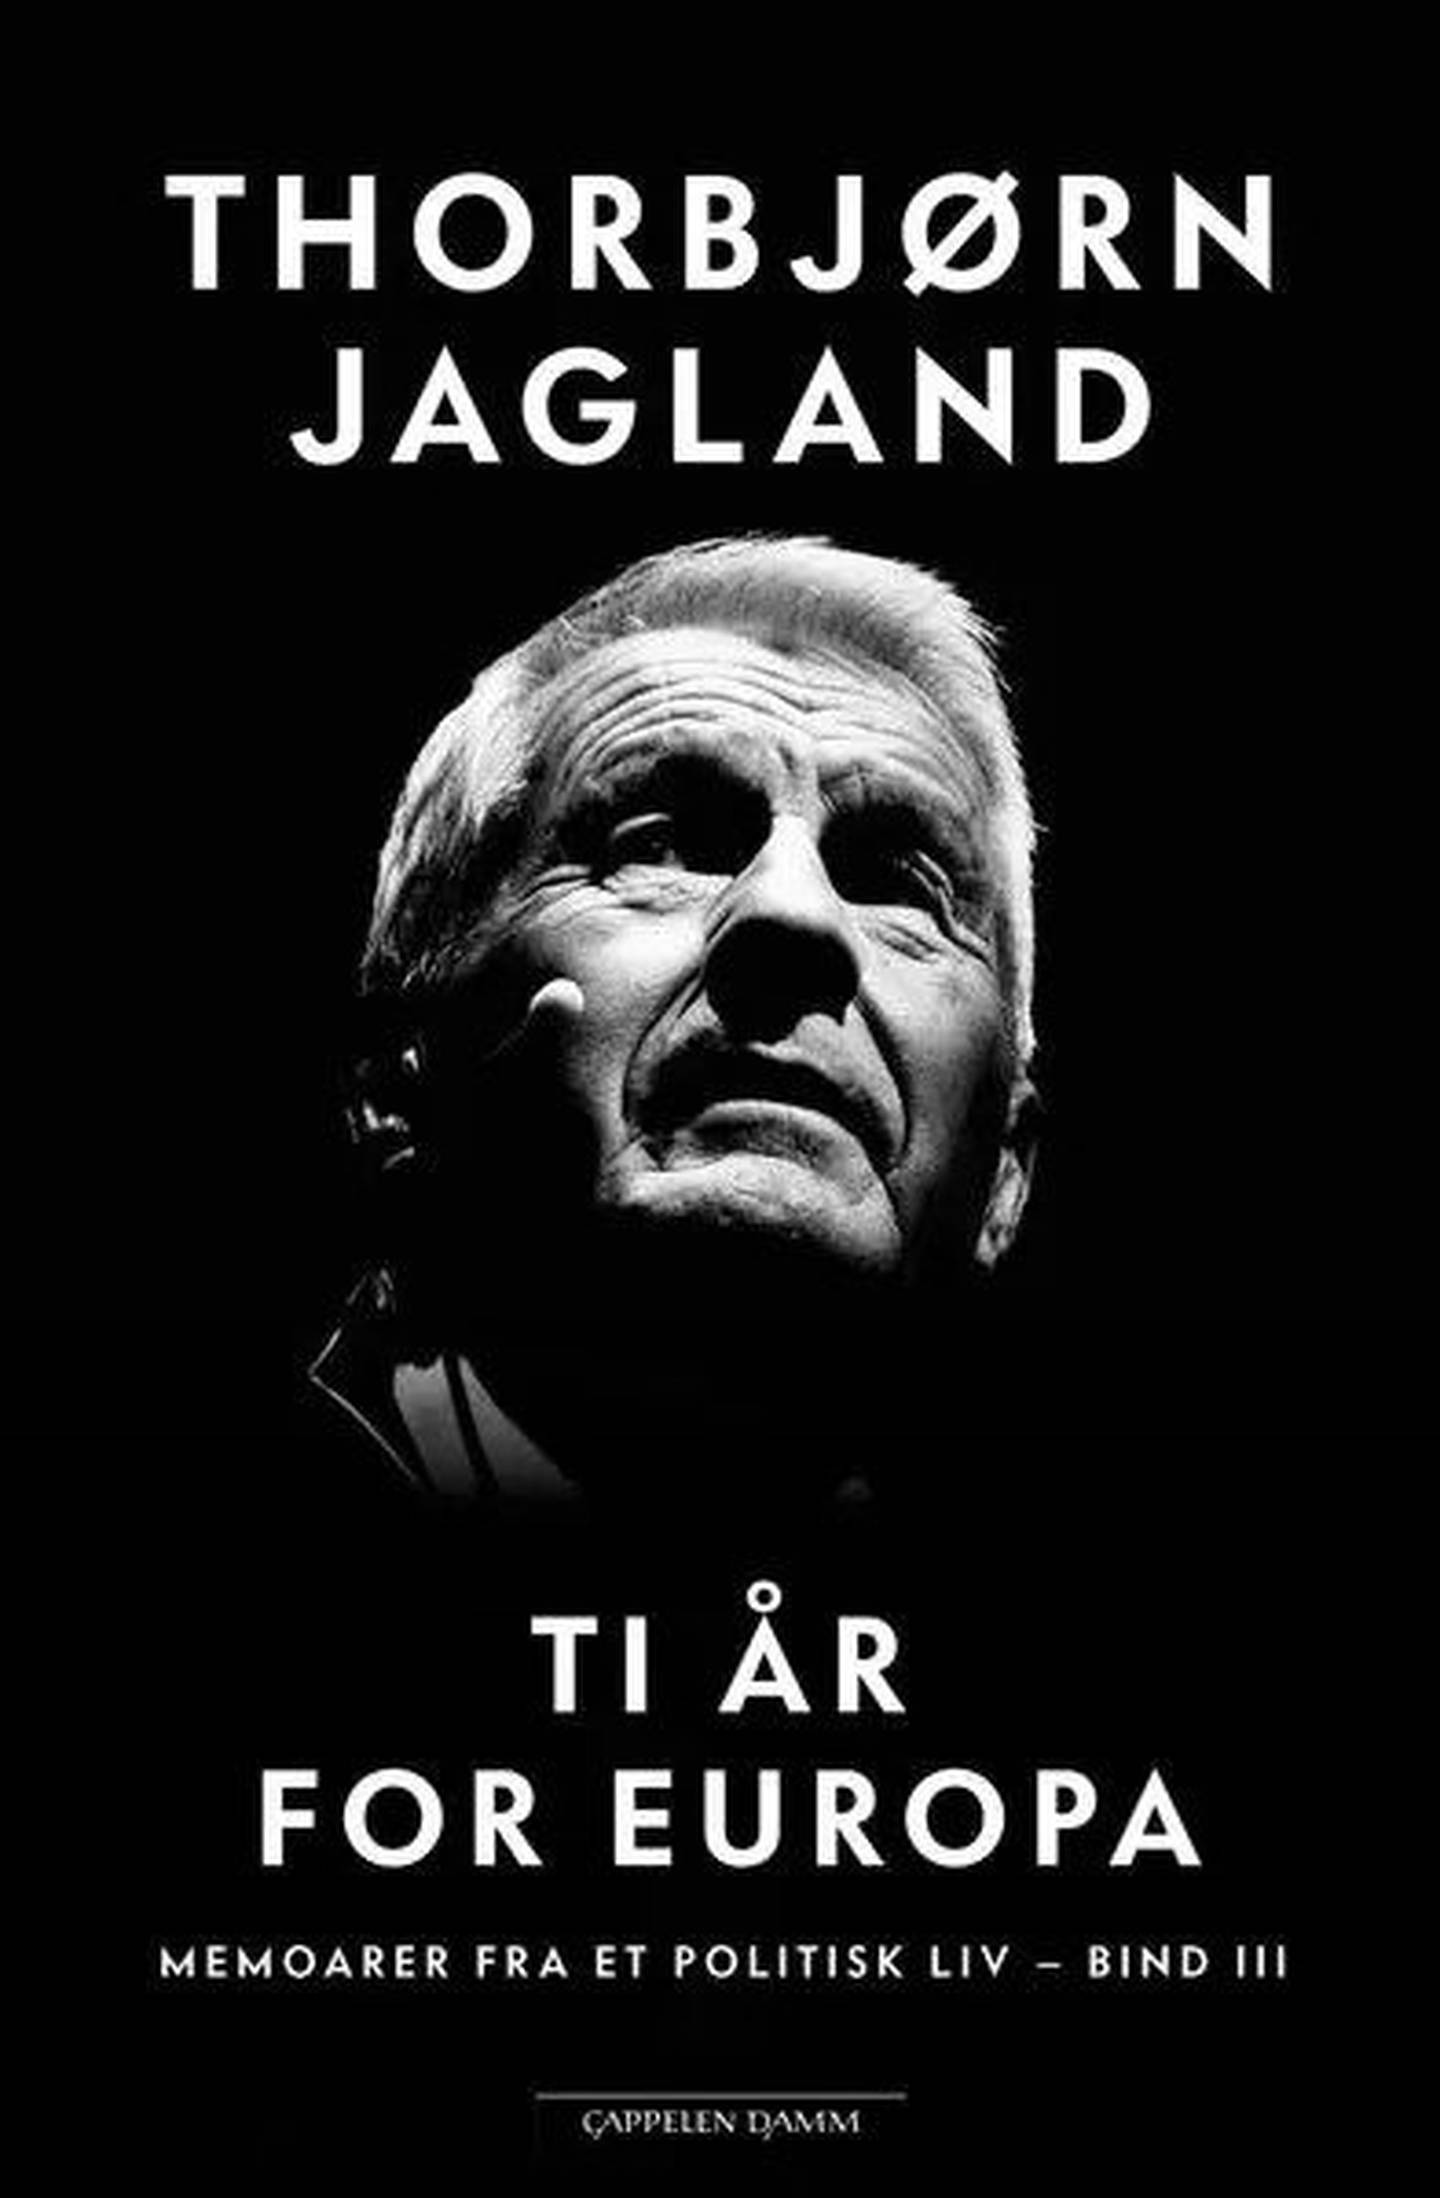 Thorbjørn Jagland har gitt ut ny bok